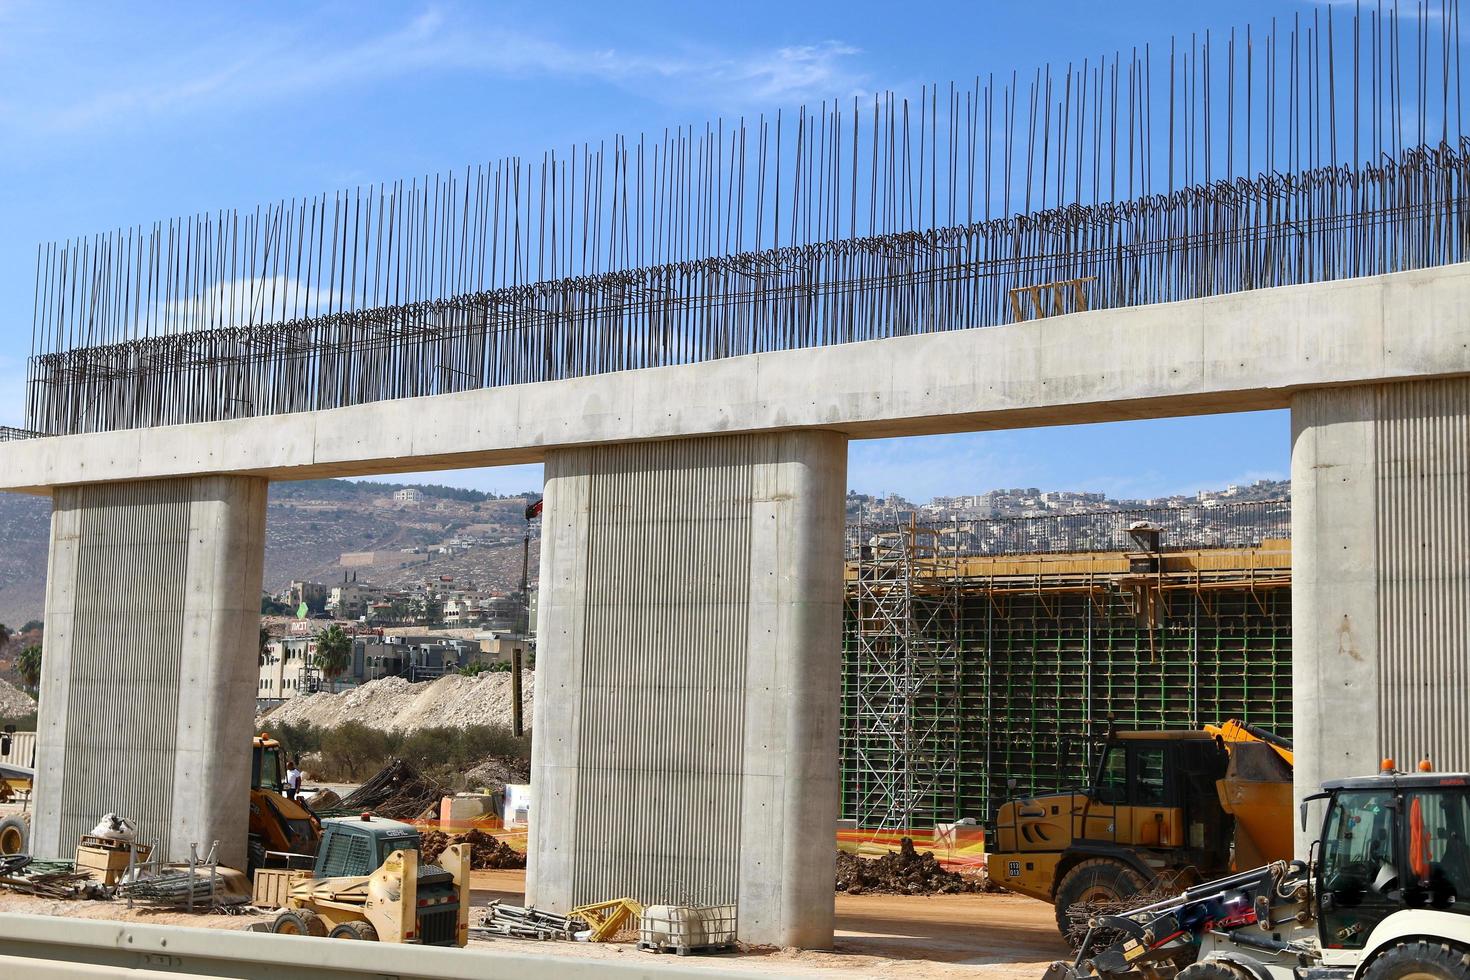 haifa israël 1 april 2019. grote verkeersbrug over de rivier. foto